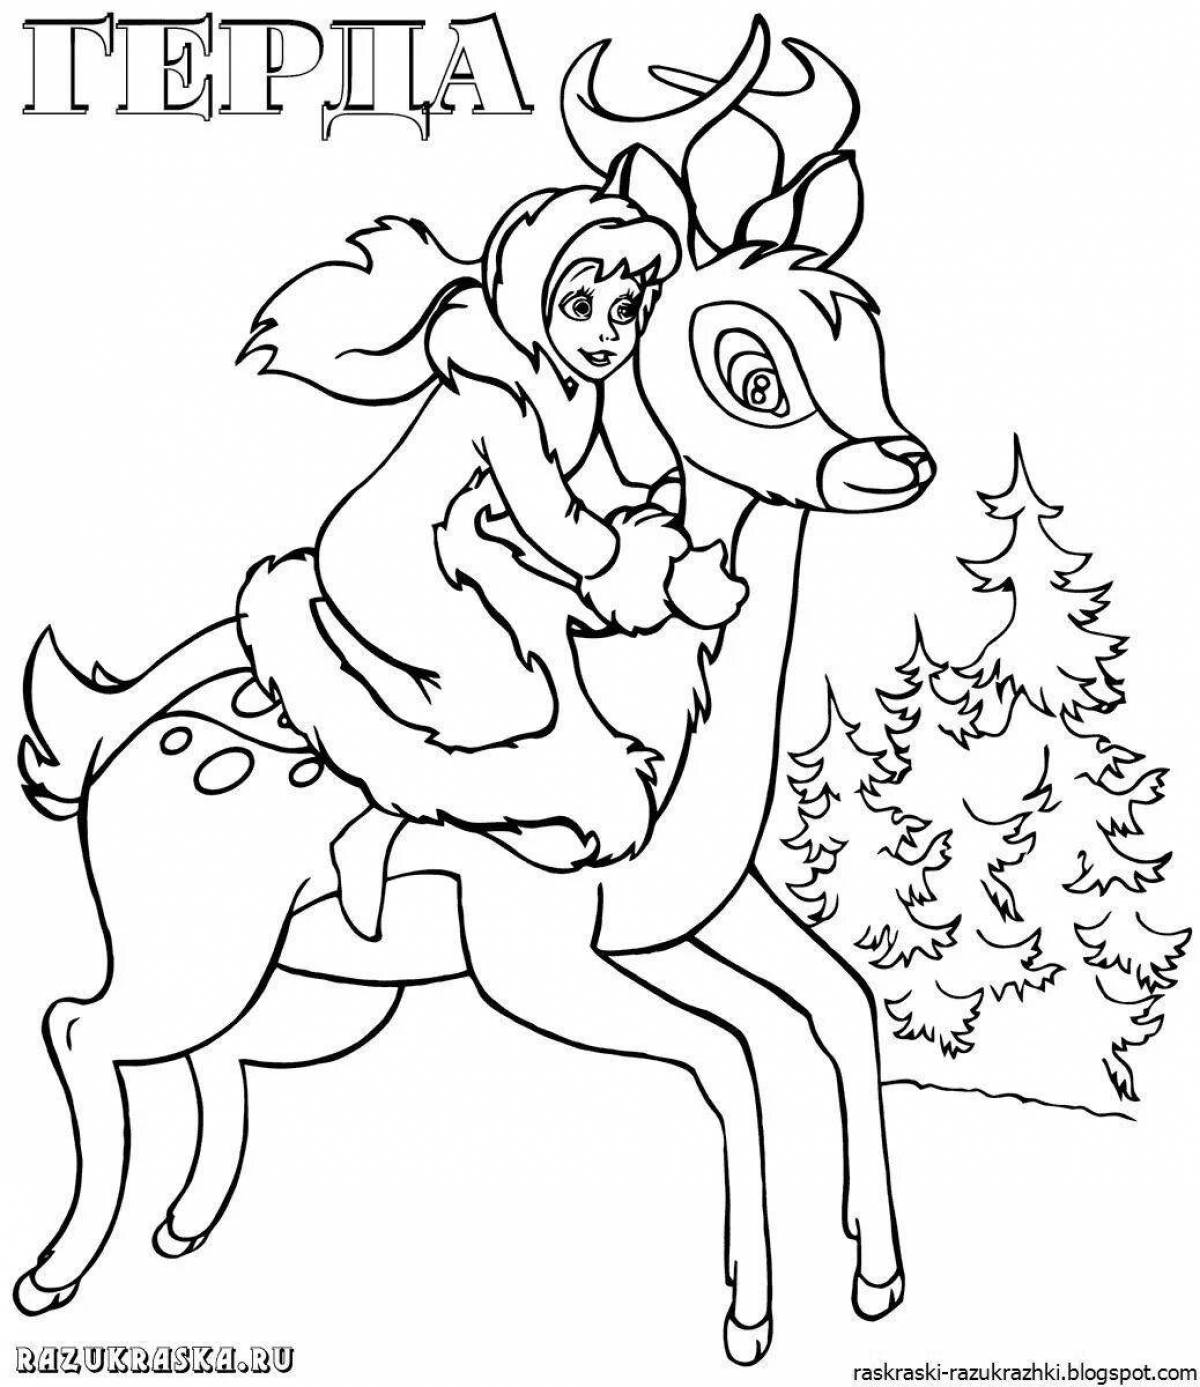 Нарисовать иллюстрацию к сказке снежная королева. Раскраски снежной королевы Кая и Герды. Снежная Королева маленькая разбойница раскраска.